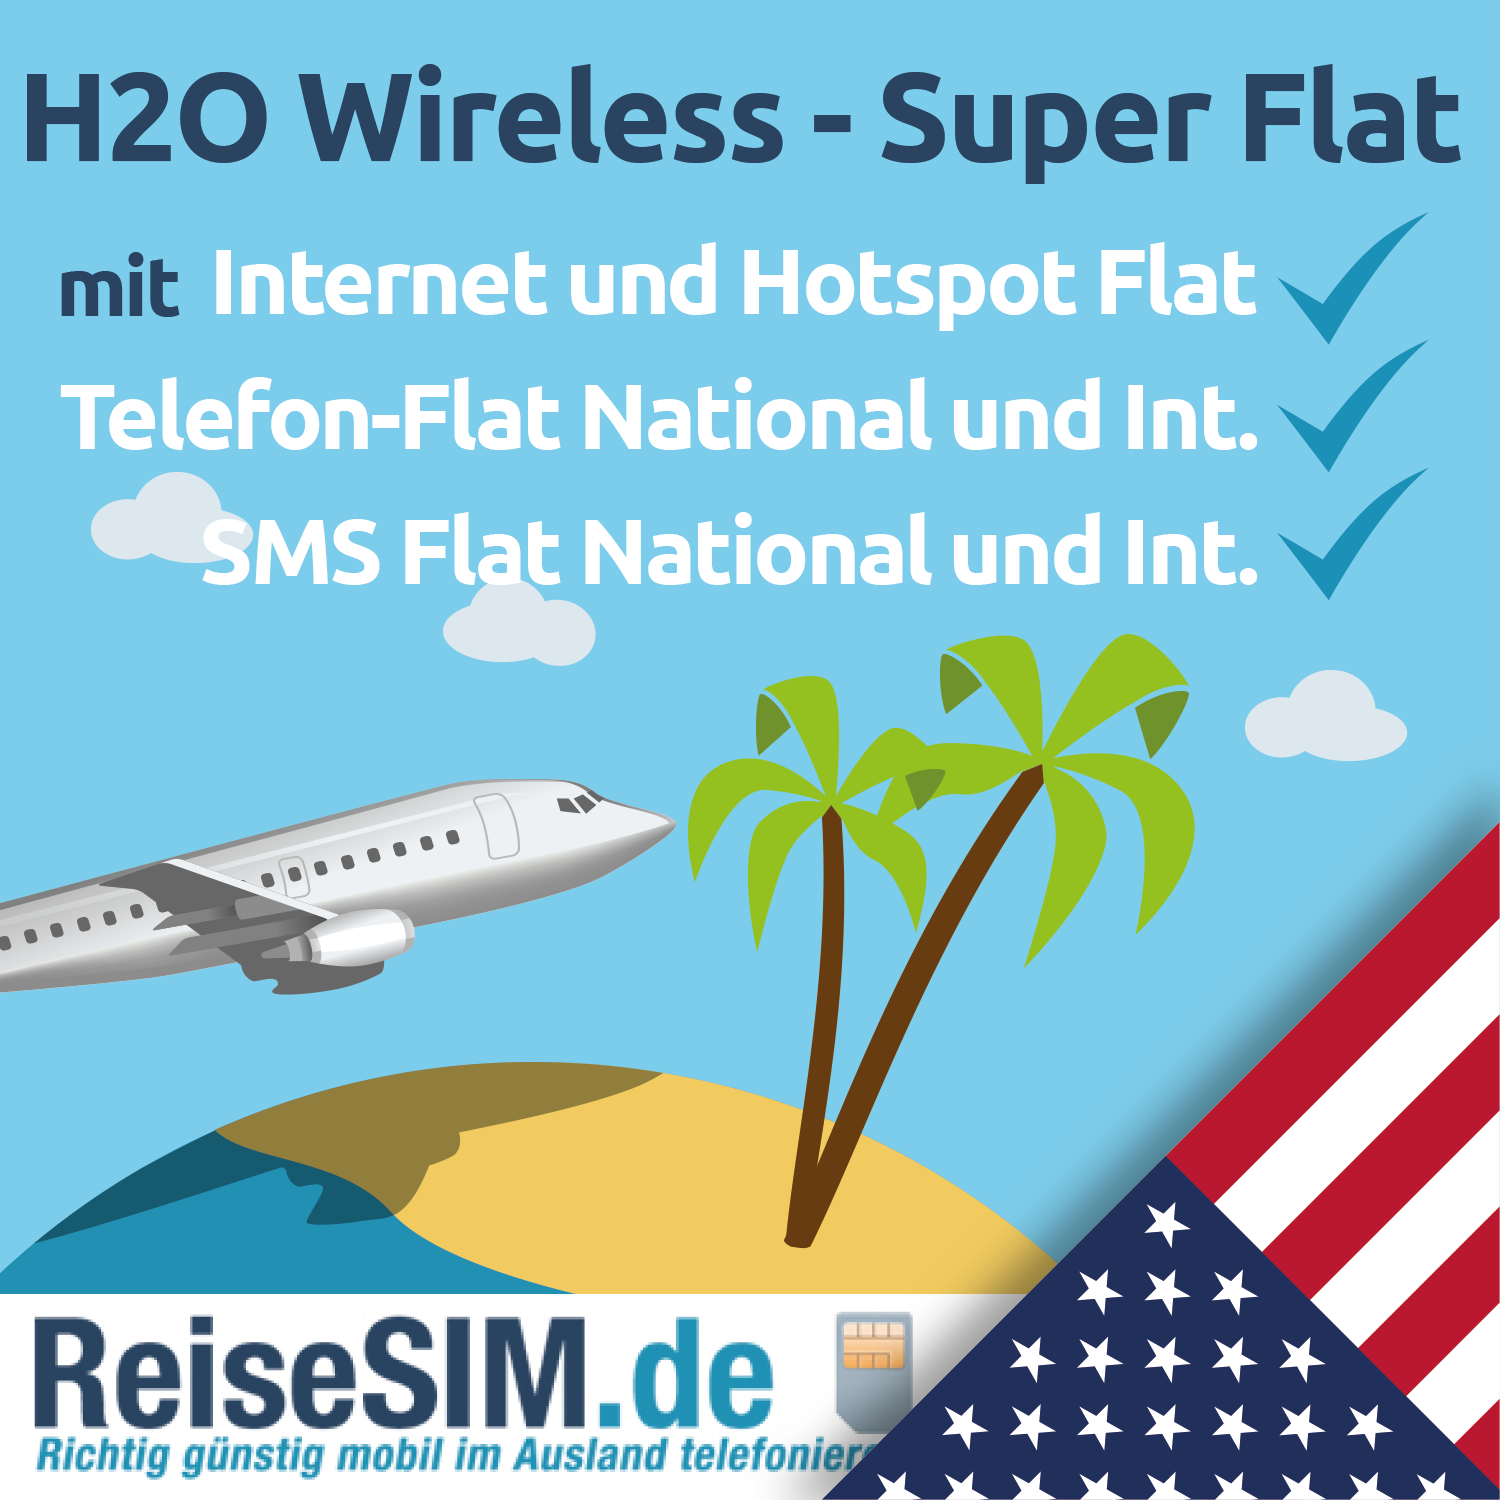 H2O Wireless $60 mit Internet und Telefonflat und Hotspot